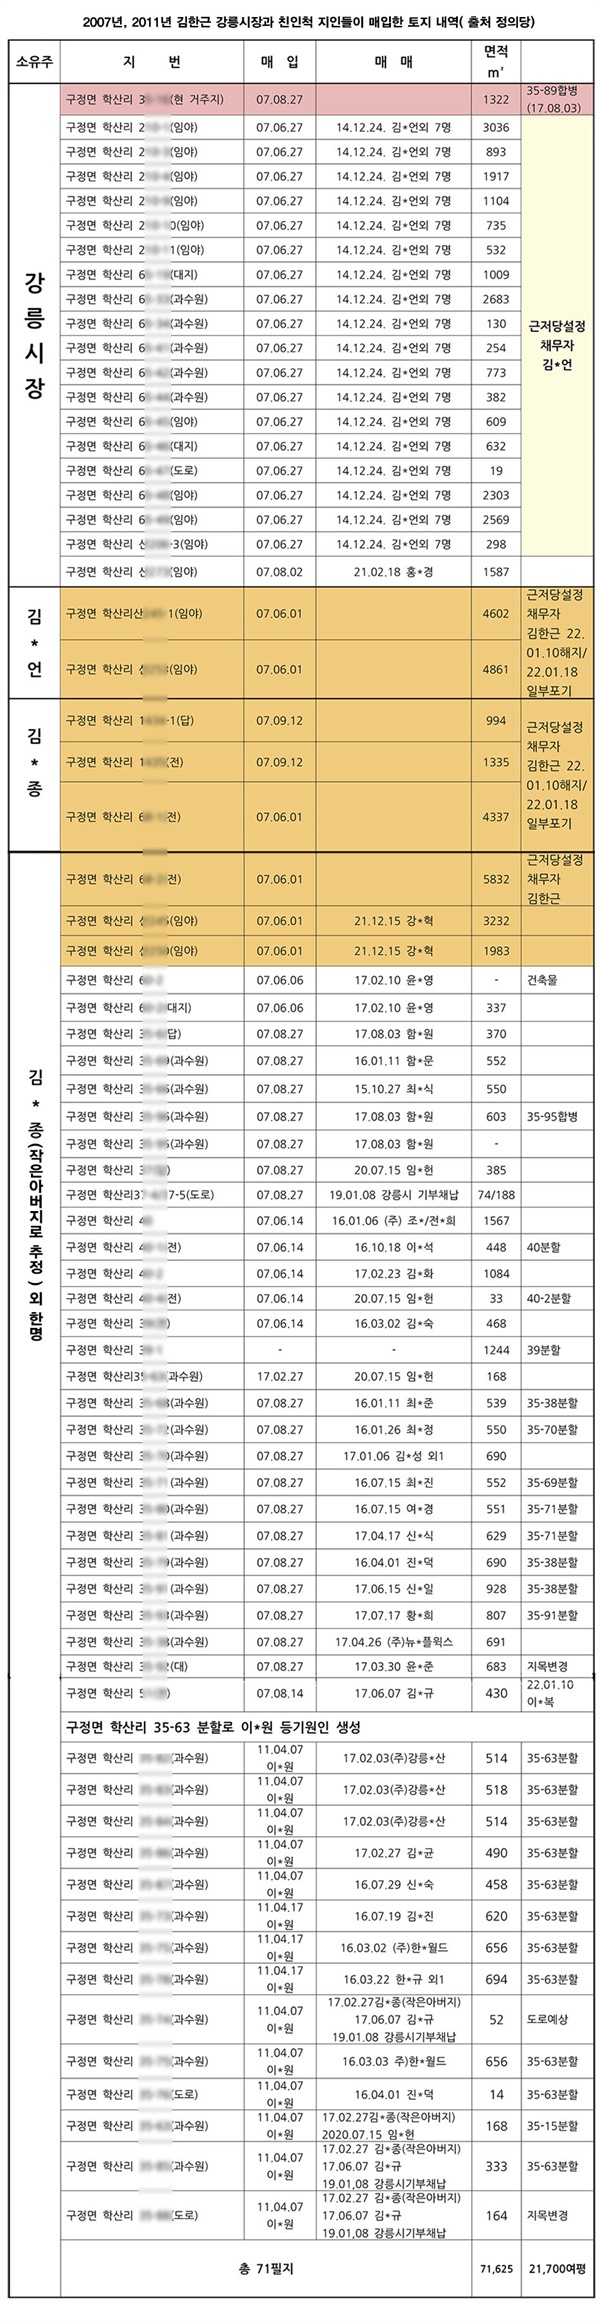 김한근 강릉시장 일가와 기업인인 지인의 개발 예정지 부동산 거래 현황